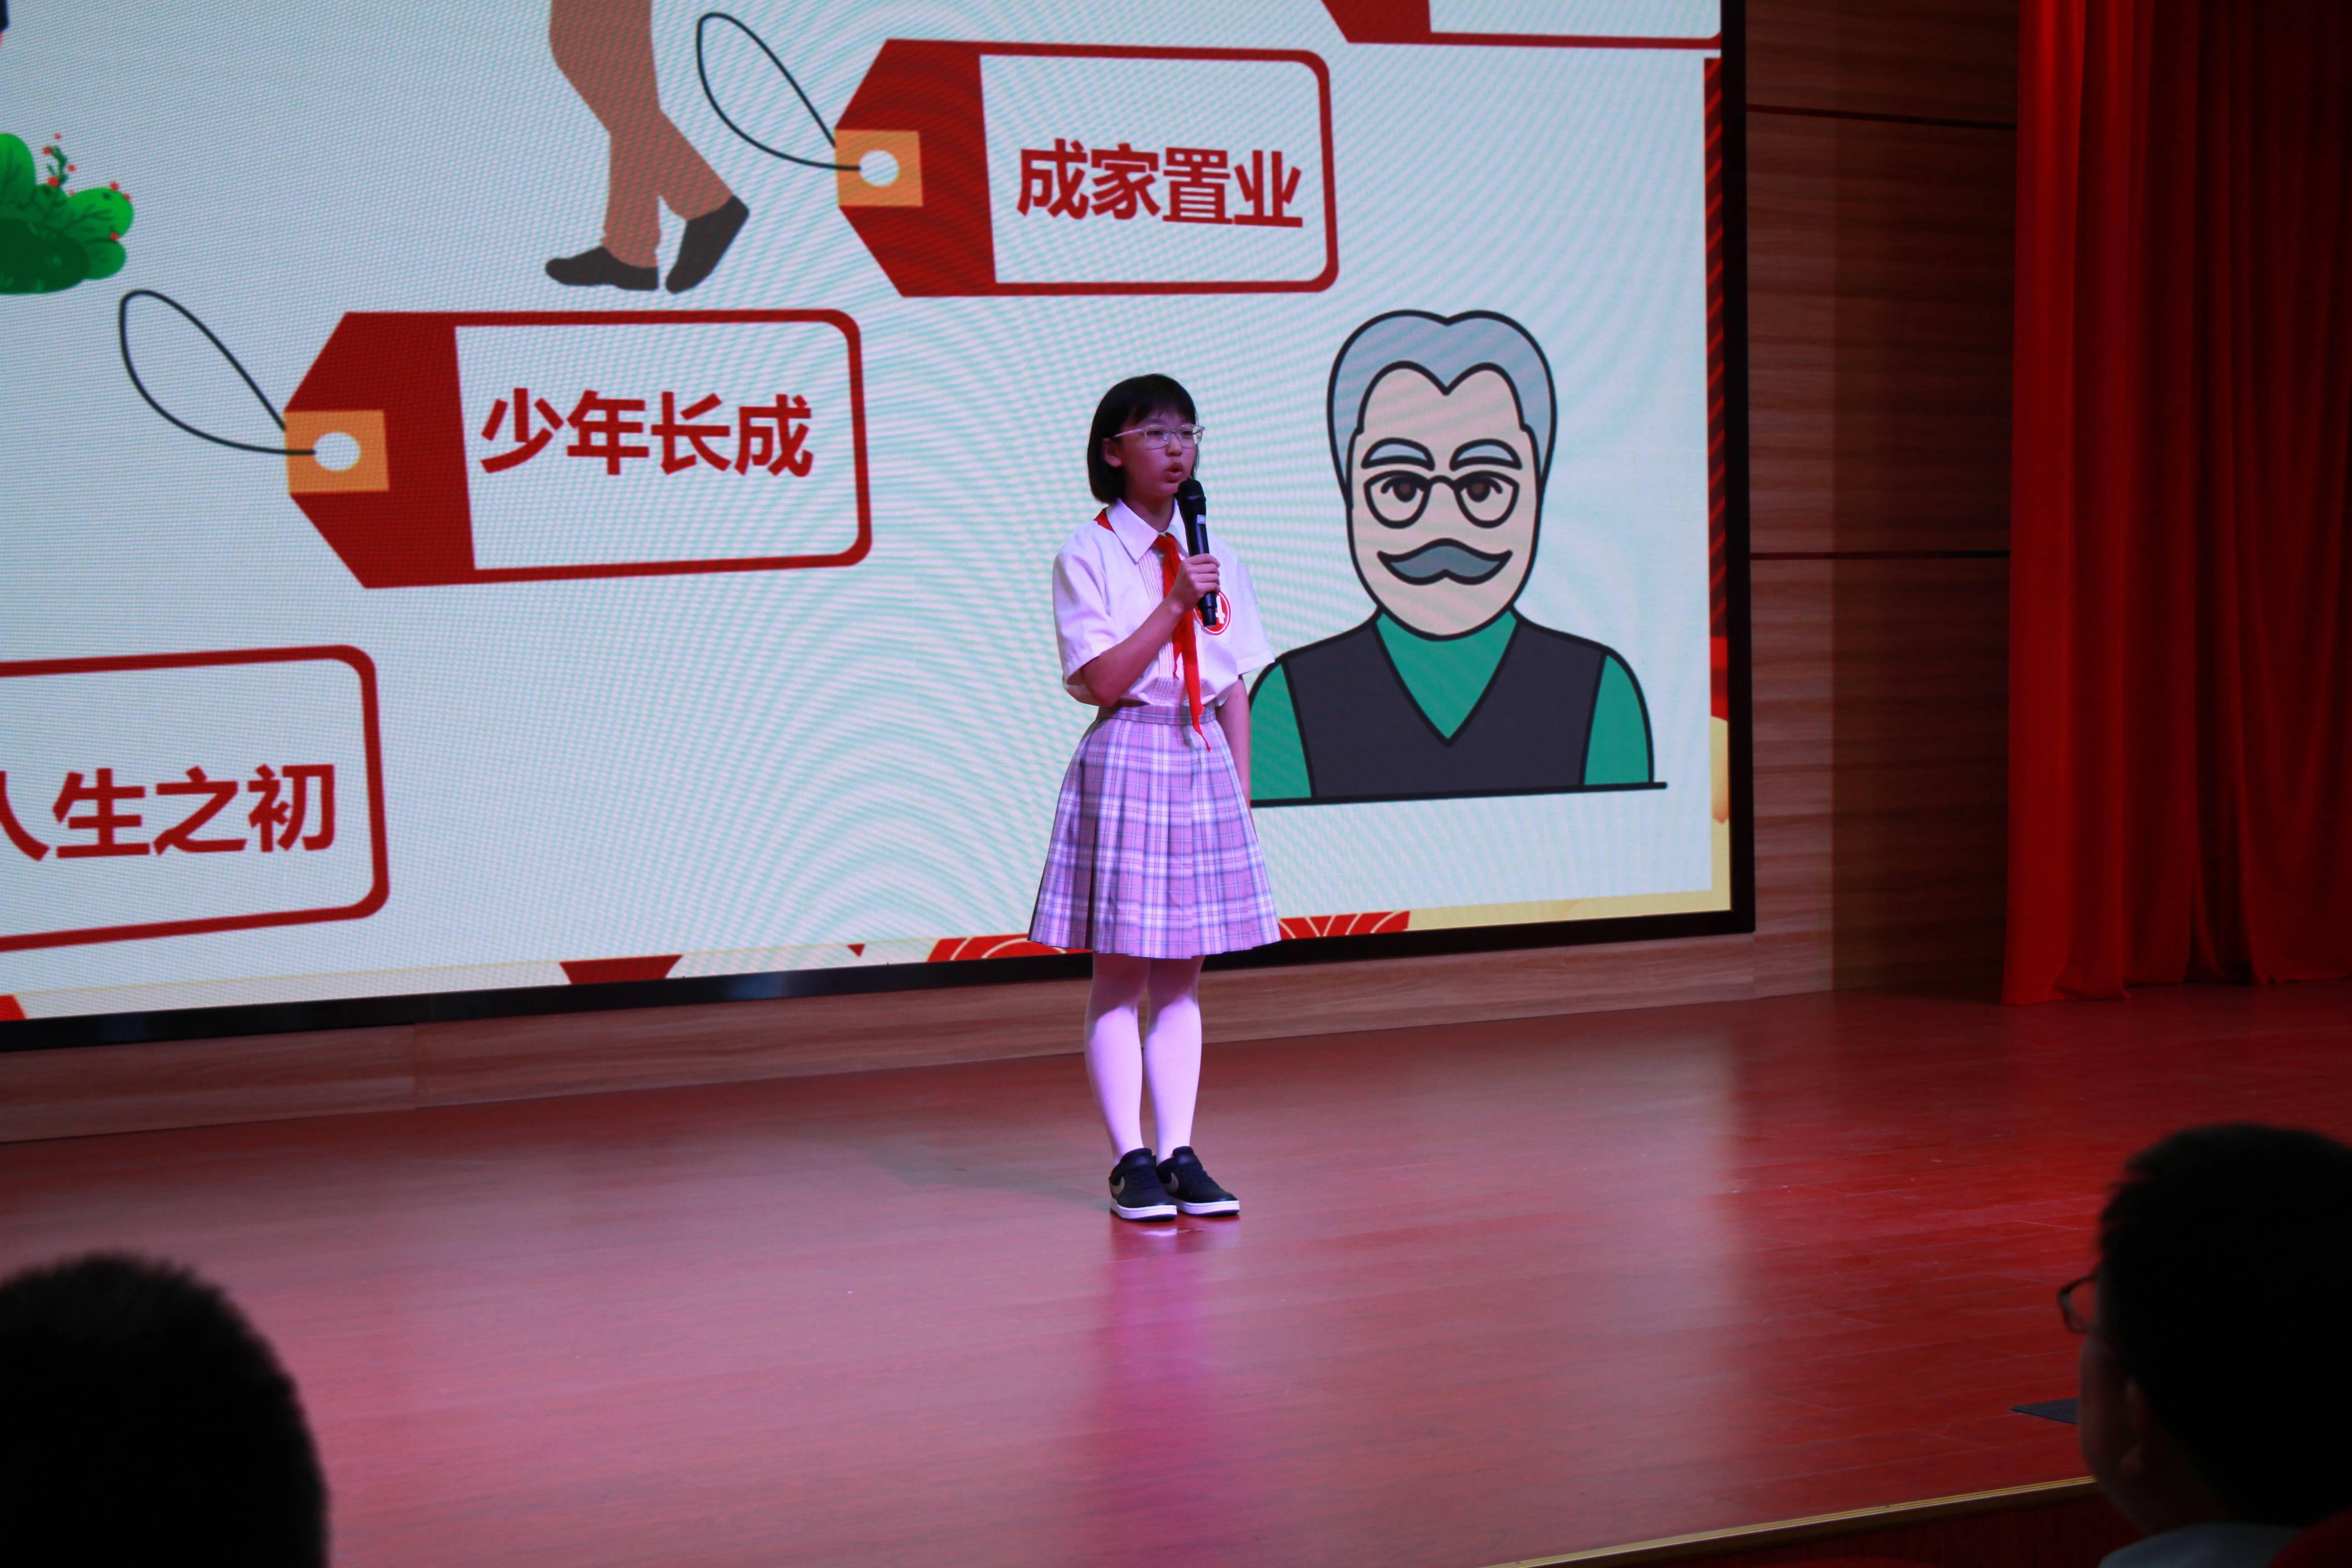 上海市爱心帮教基金会,长兴镇政府联合举办的法治演讲比赛在长兴中学